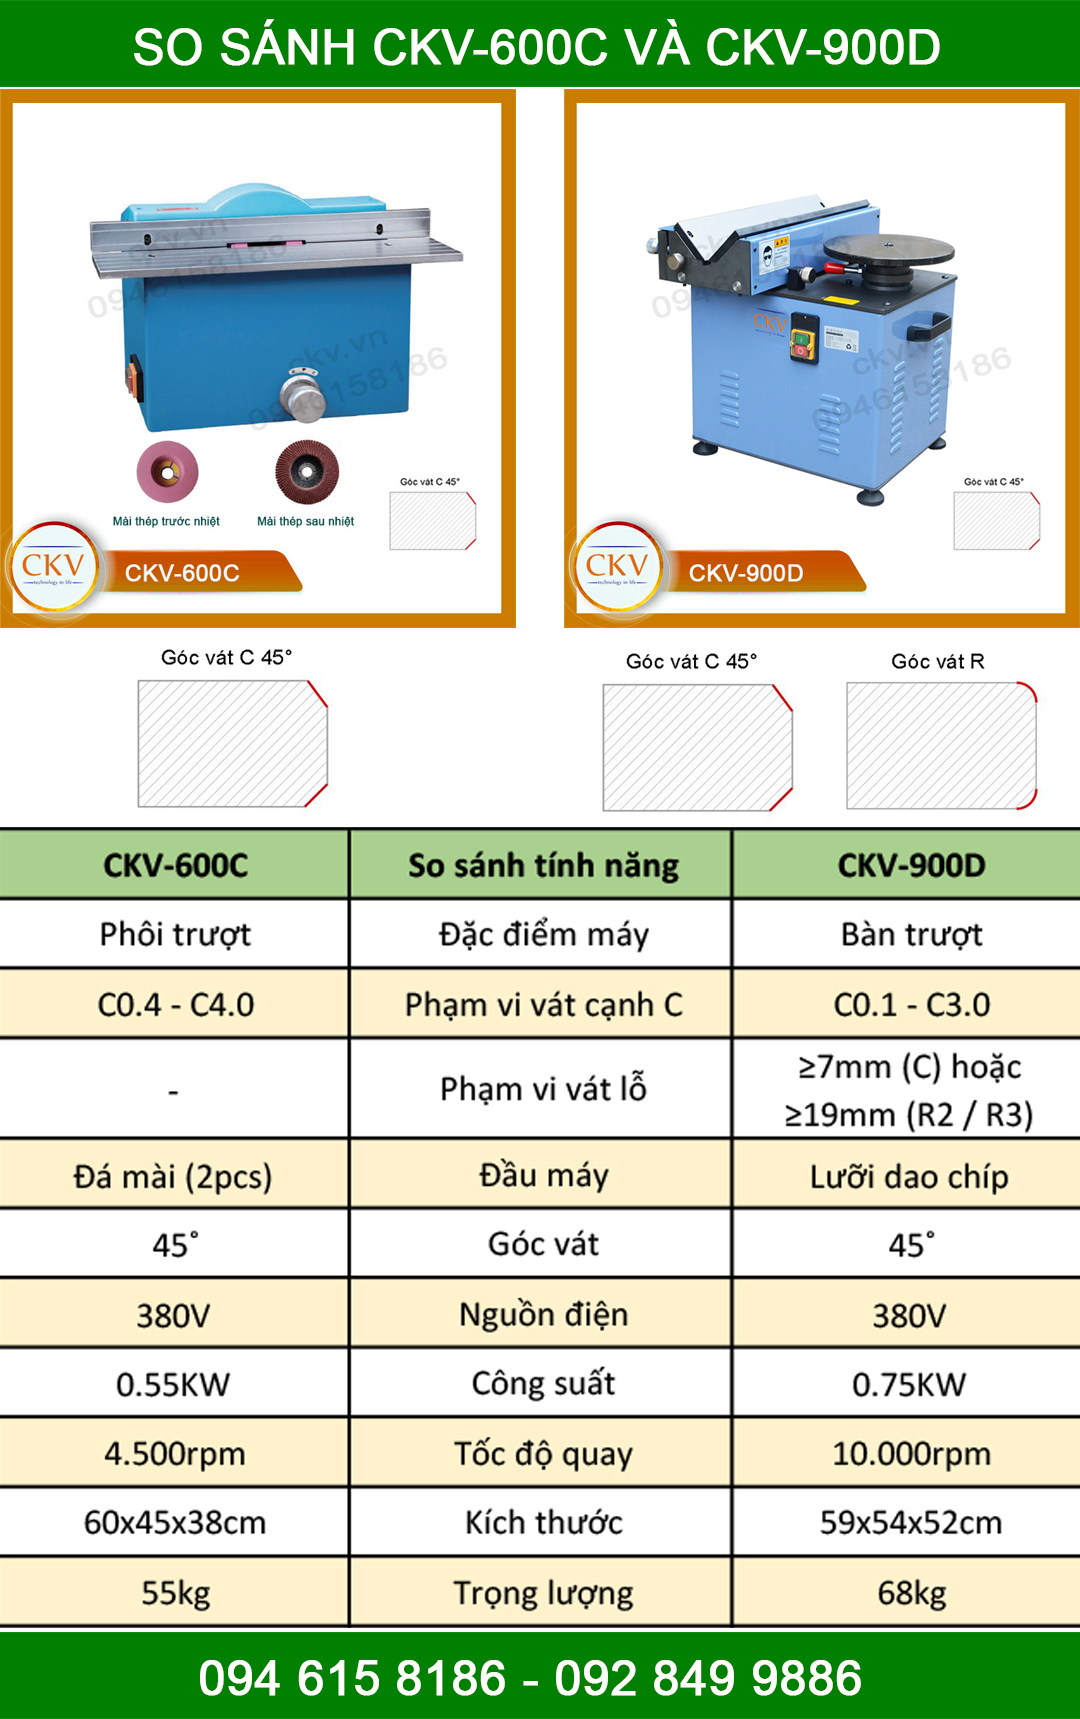 So sánh CKV-600C với CKV-900D